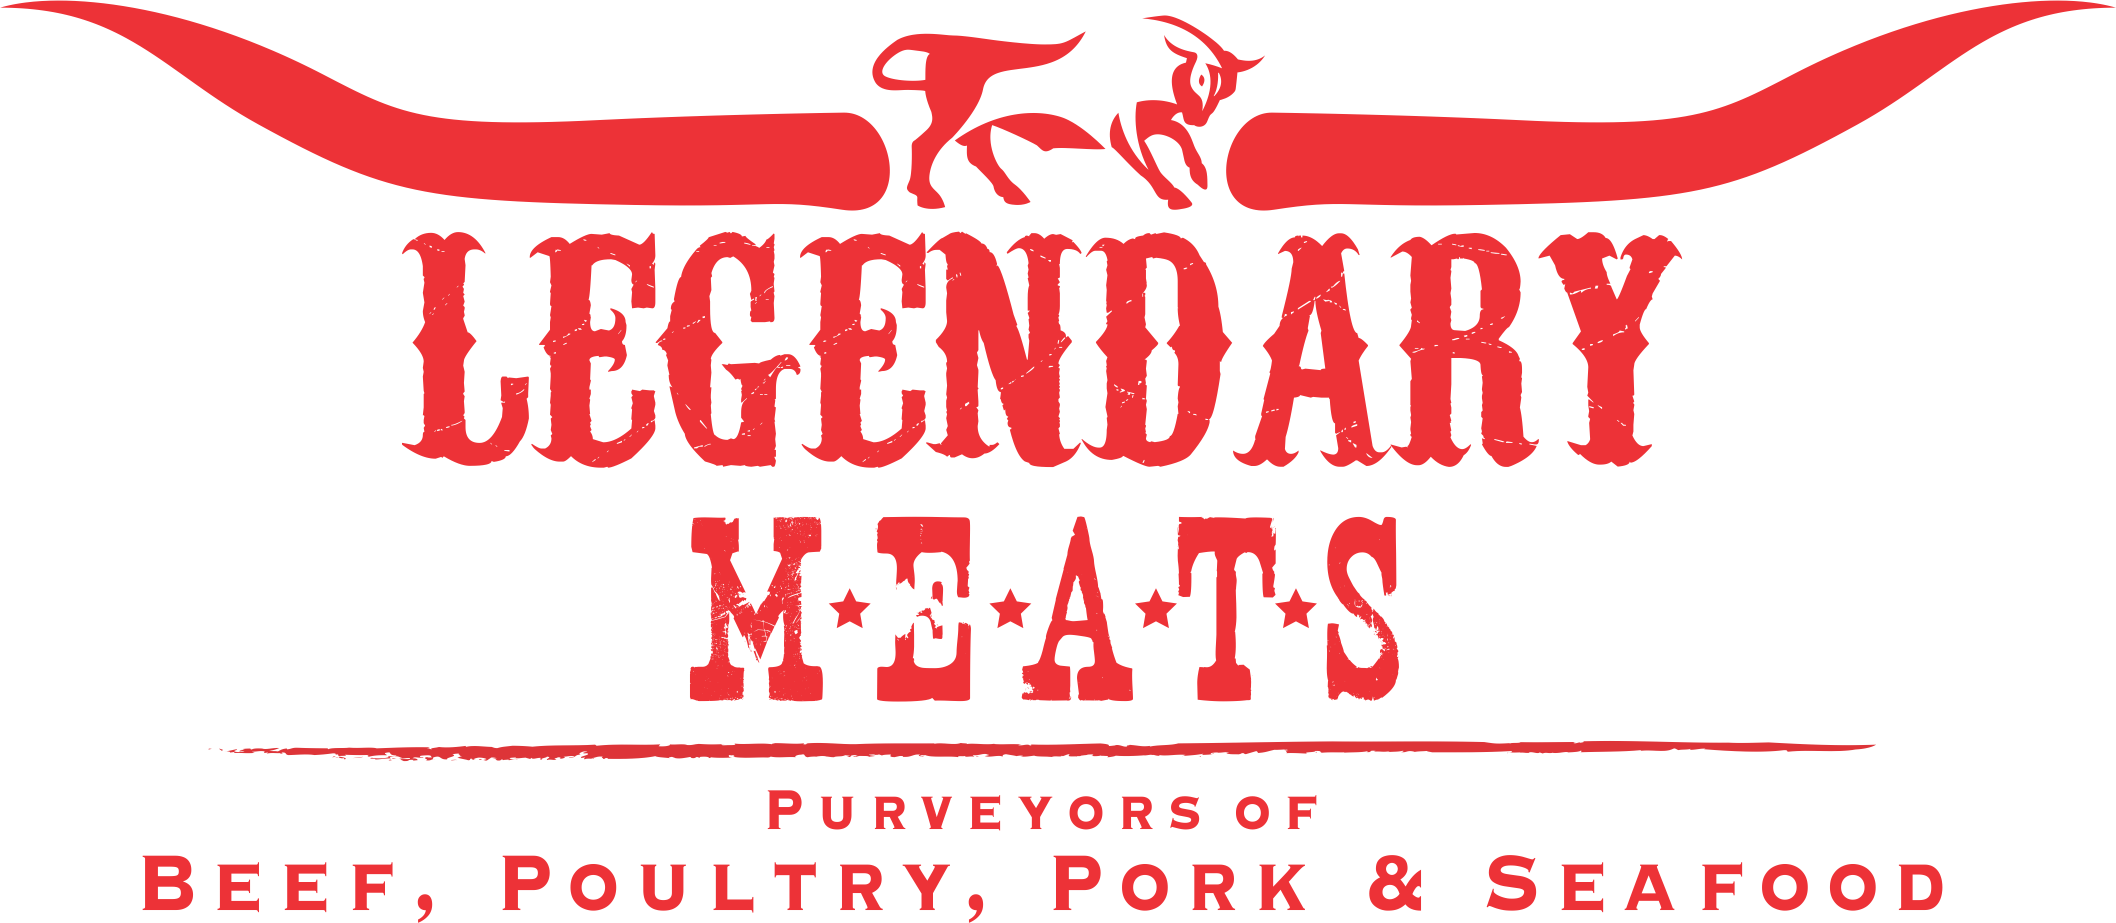 Legendary Meats